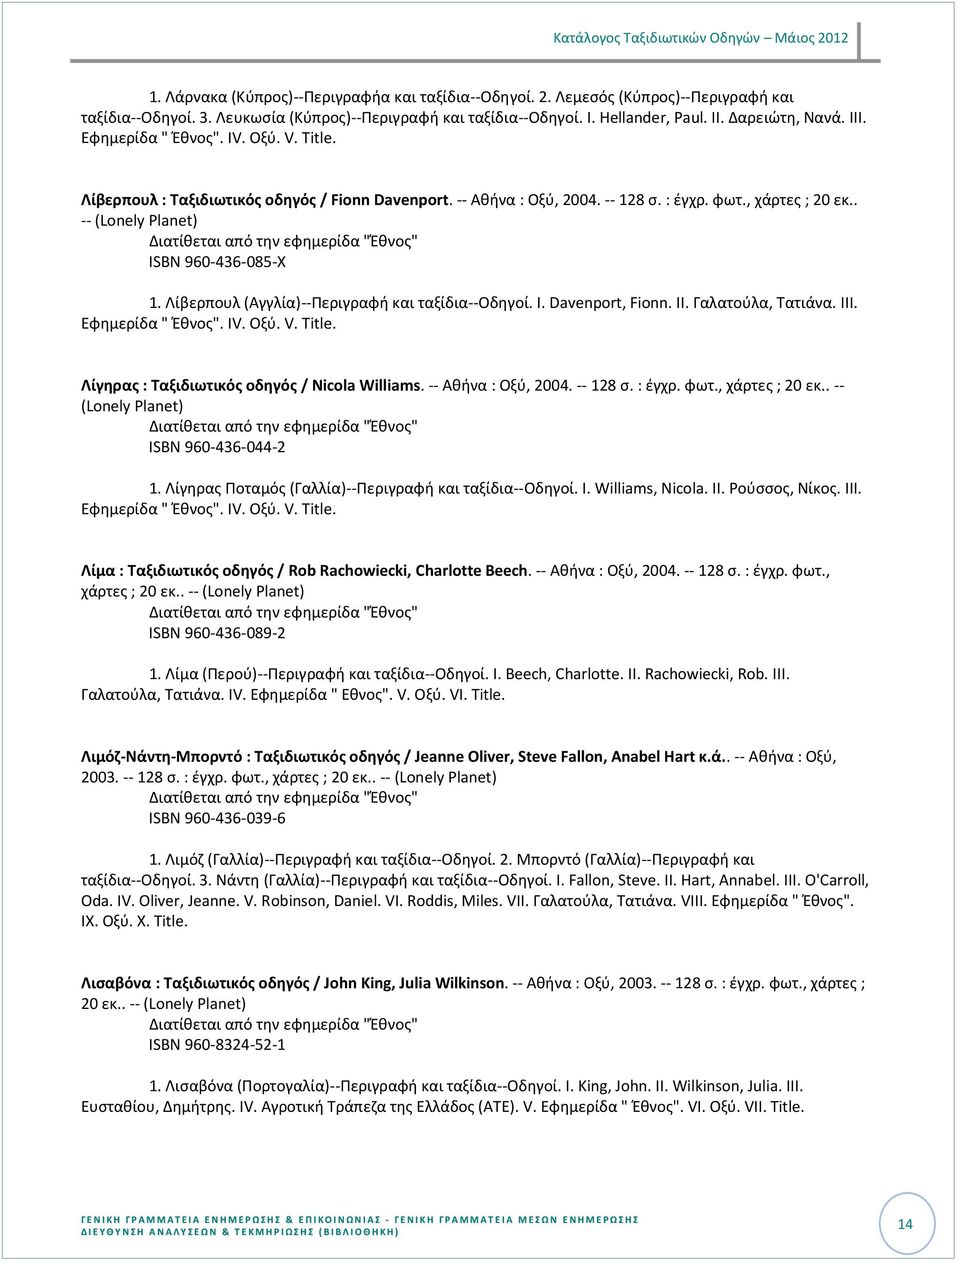 II. Γαλατοφλα, Σατιάνα. III. Λίγθρασ : Ταξιδιωτικόσ οδθγόσ / Nicola Williams. -- Ακινα : Οξφ, 2004. -- 128 ς. : ζγχρ. φωτ., χάρτεσ ; 20 εκ.. -- ISBN 960-436-044-2 1.